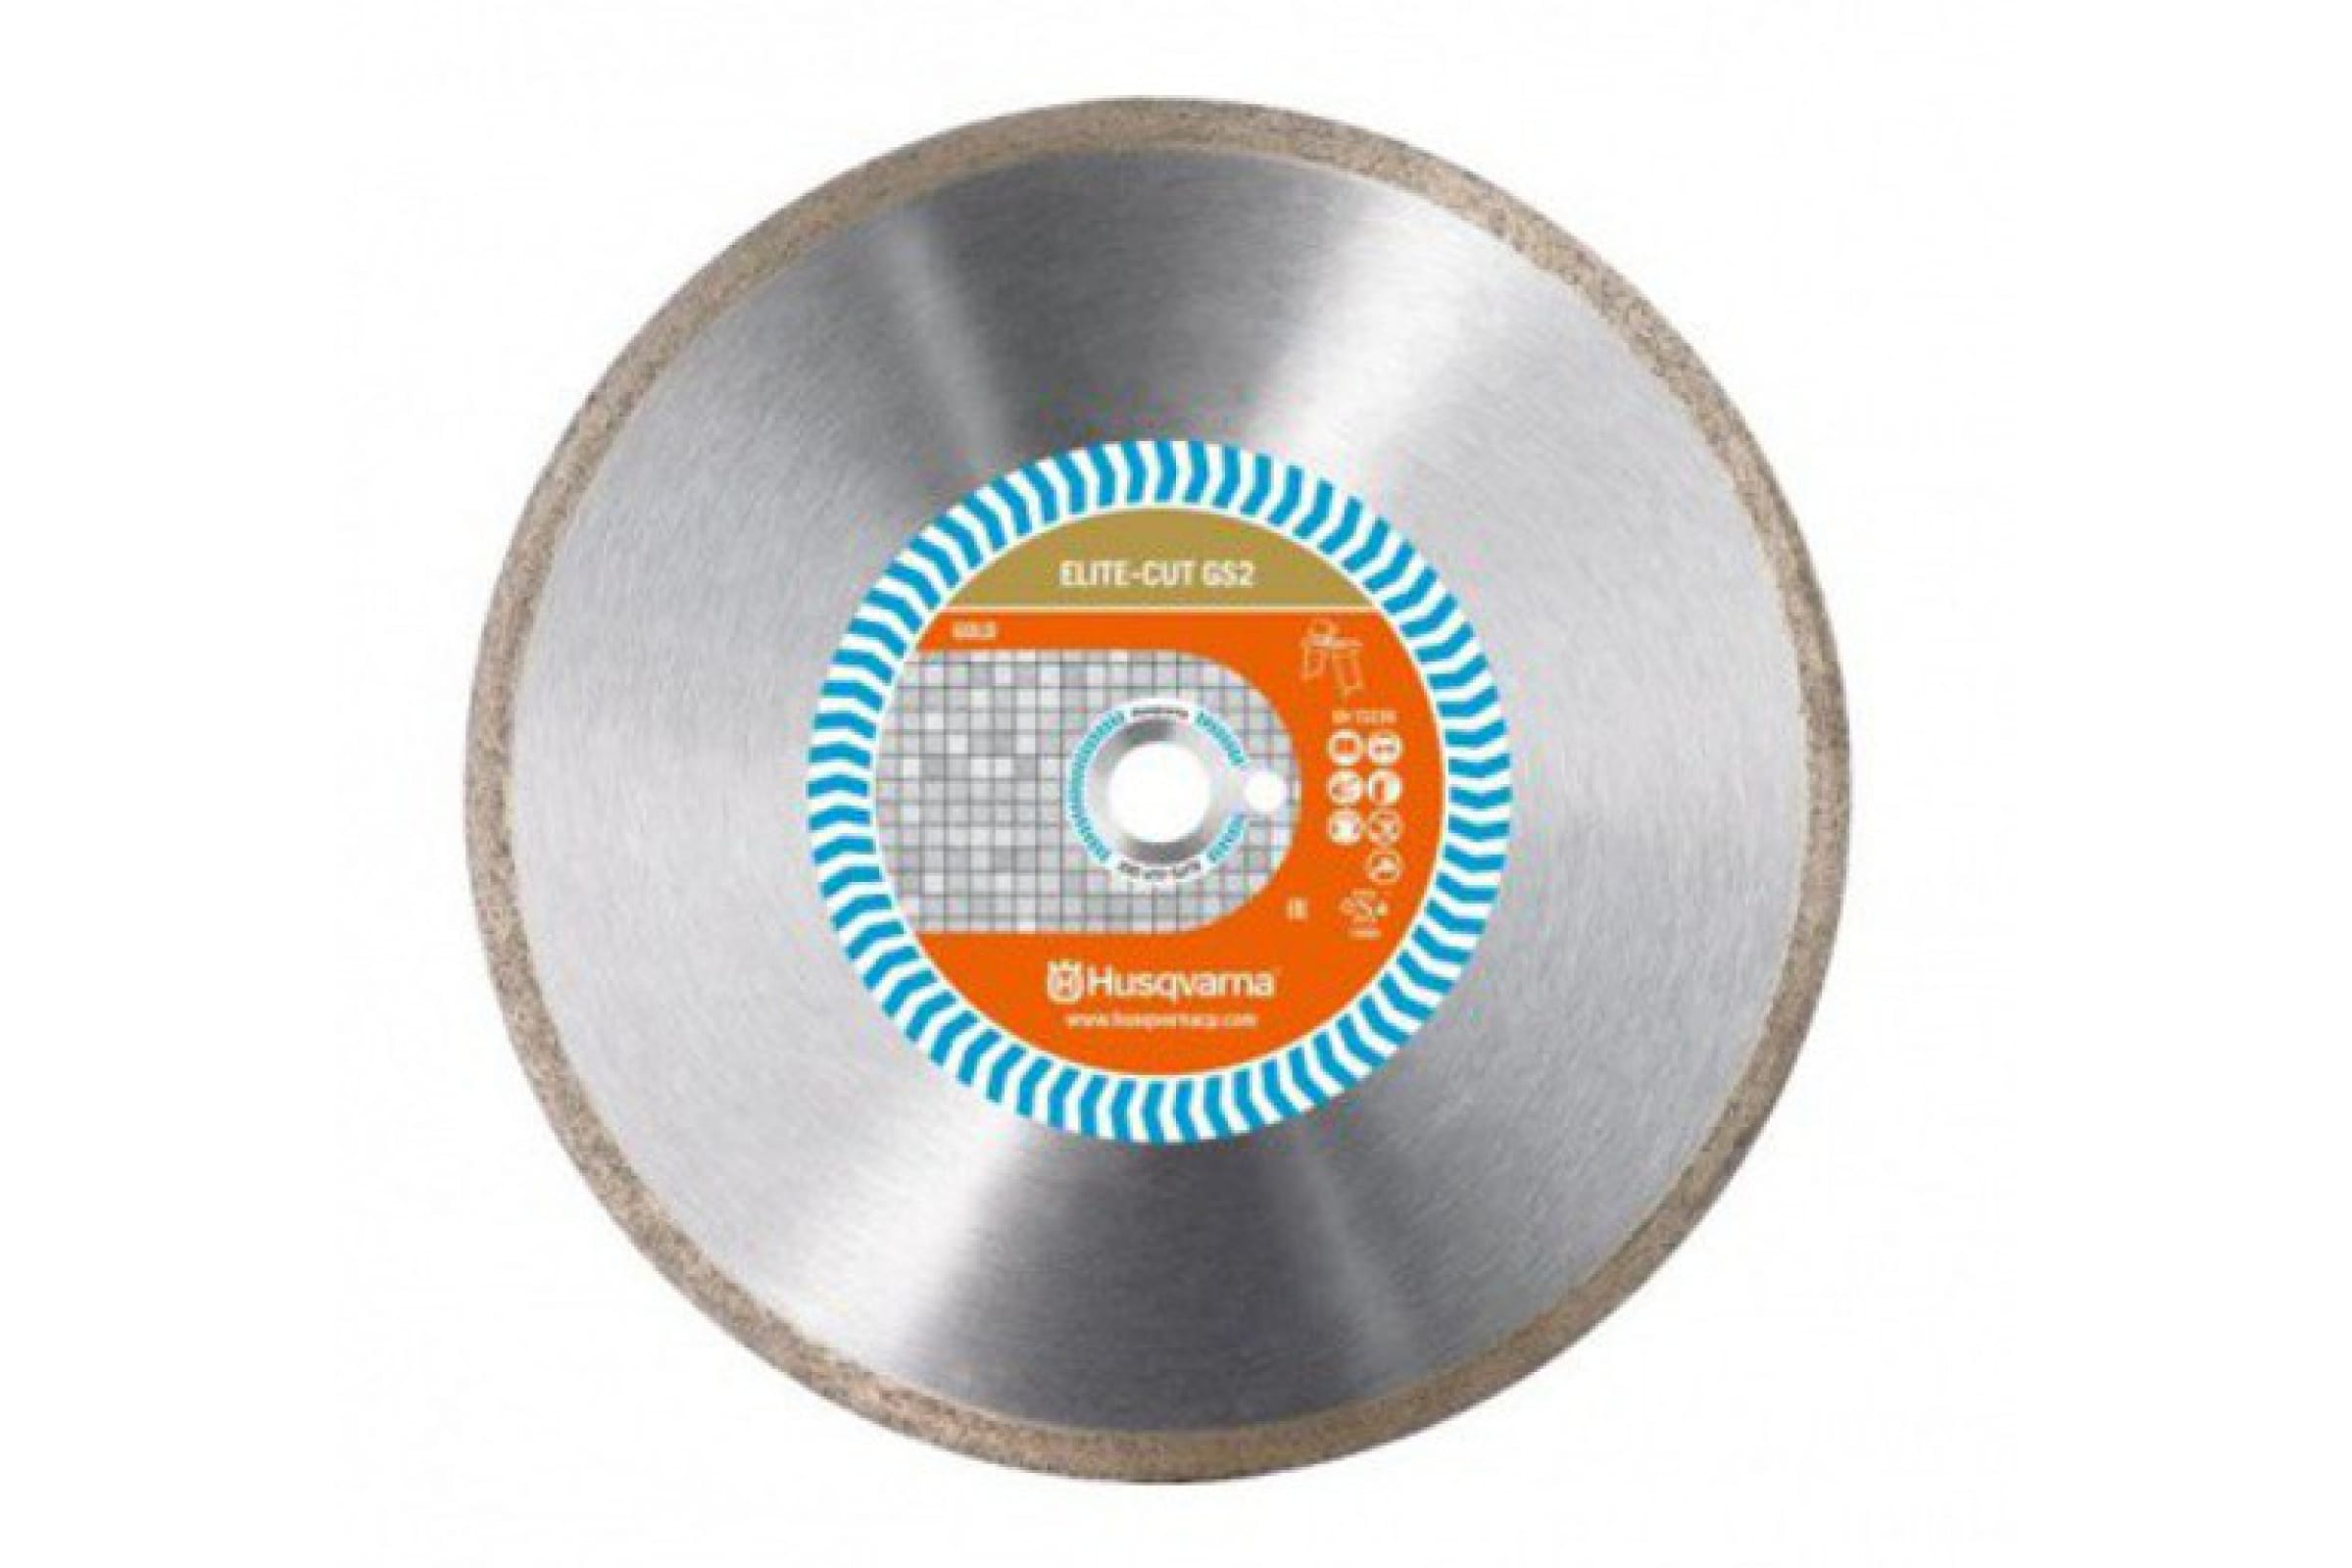 Husqvarna Construction Алмазный диск ELITE-CUTGS2 350 10 25.4 5797981-20 алмазный диск vari cut s85 500х10х25 4 husqvarna construction 5798096 60